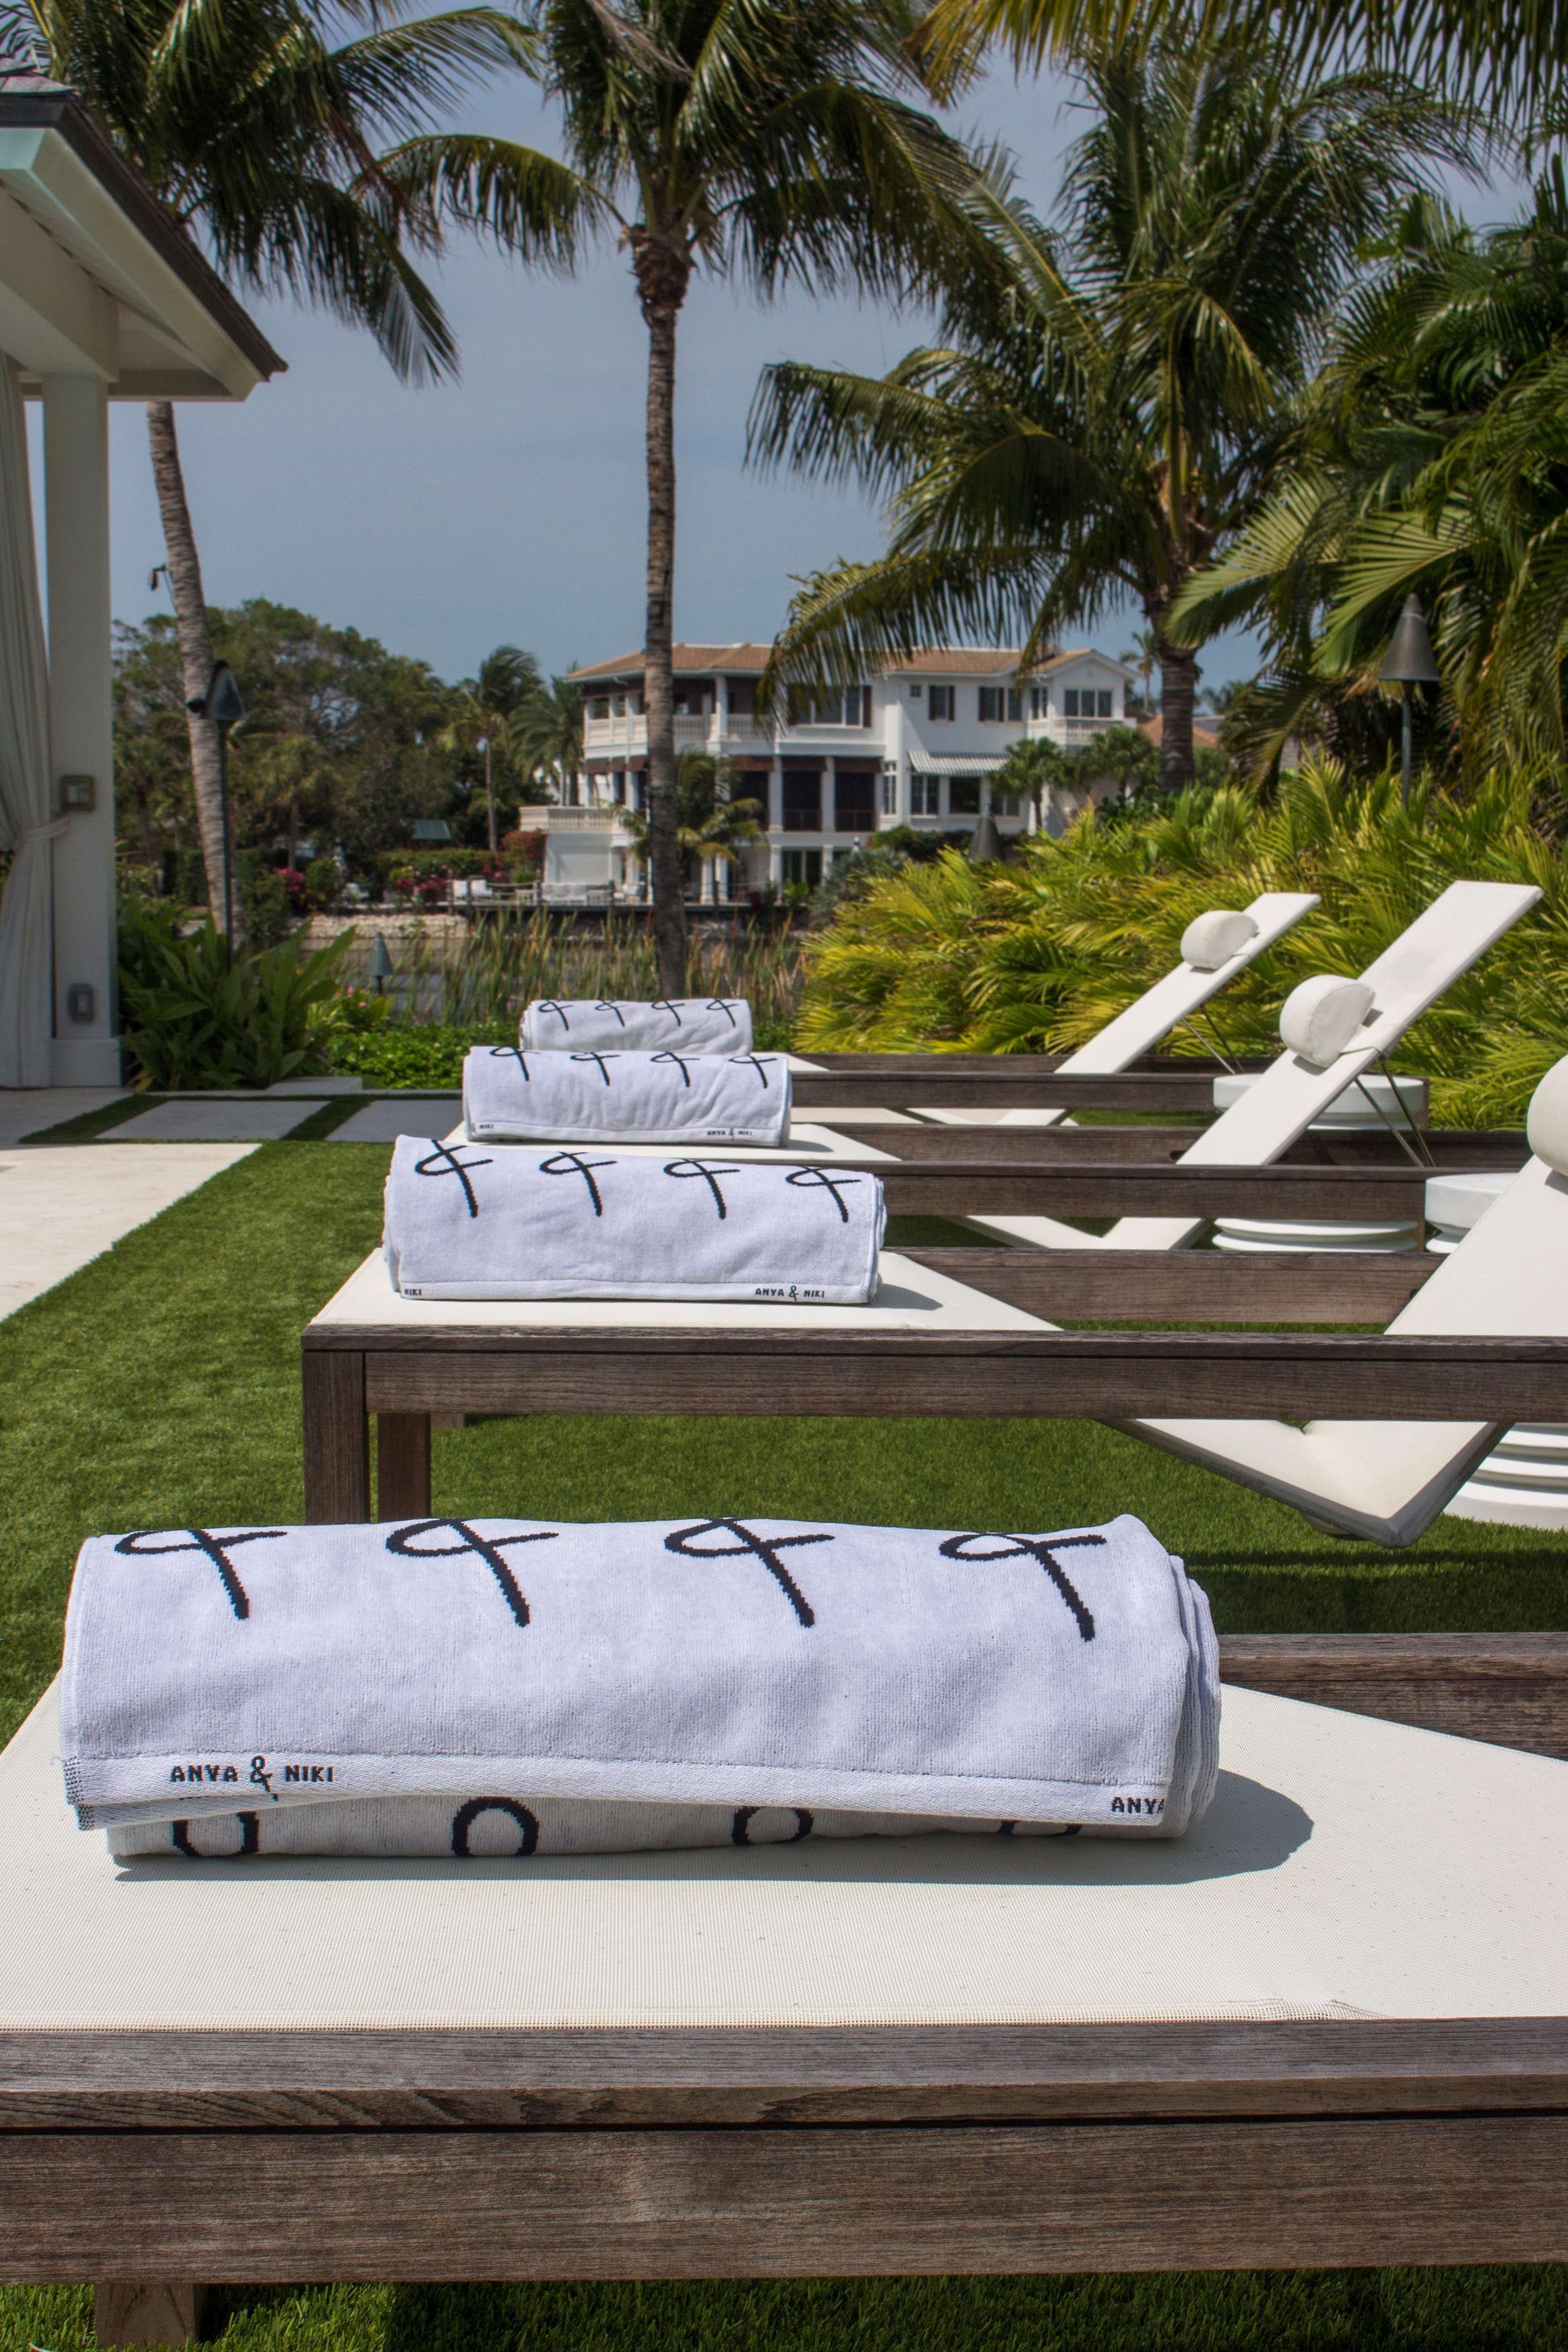 Anya & Niki beach towels on pool chairs